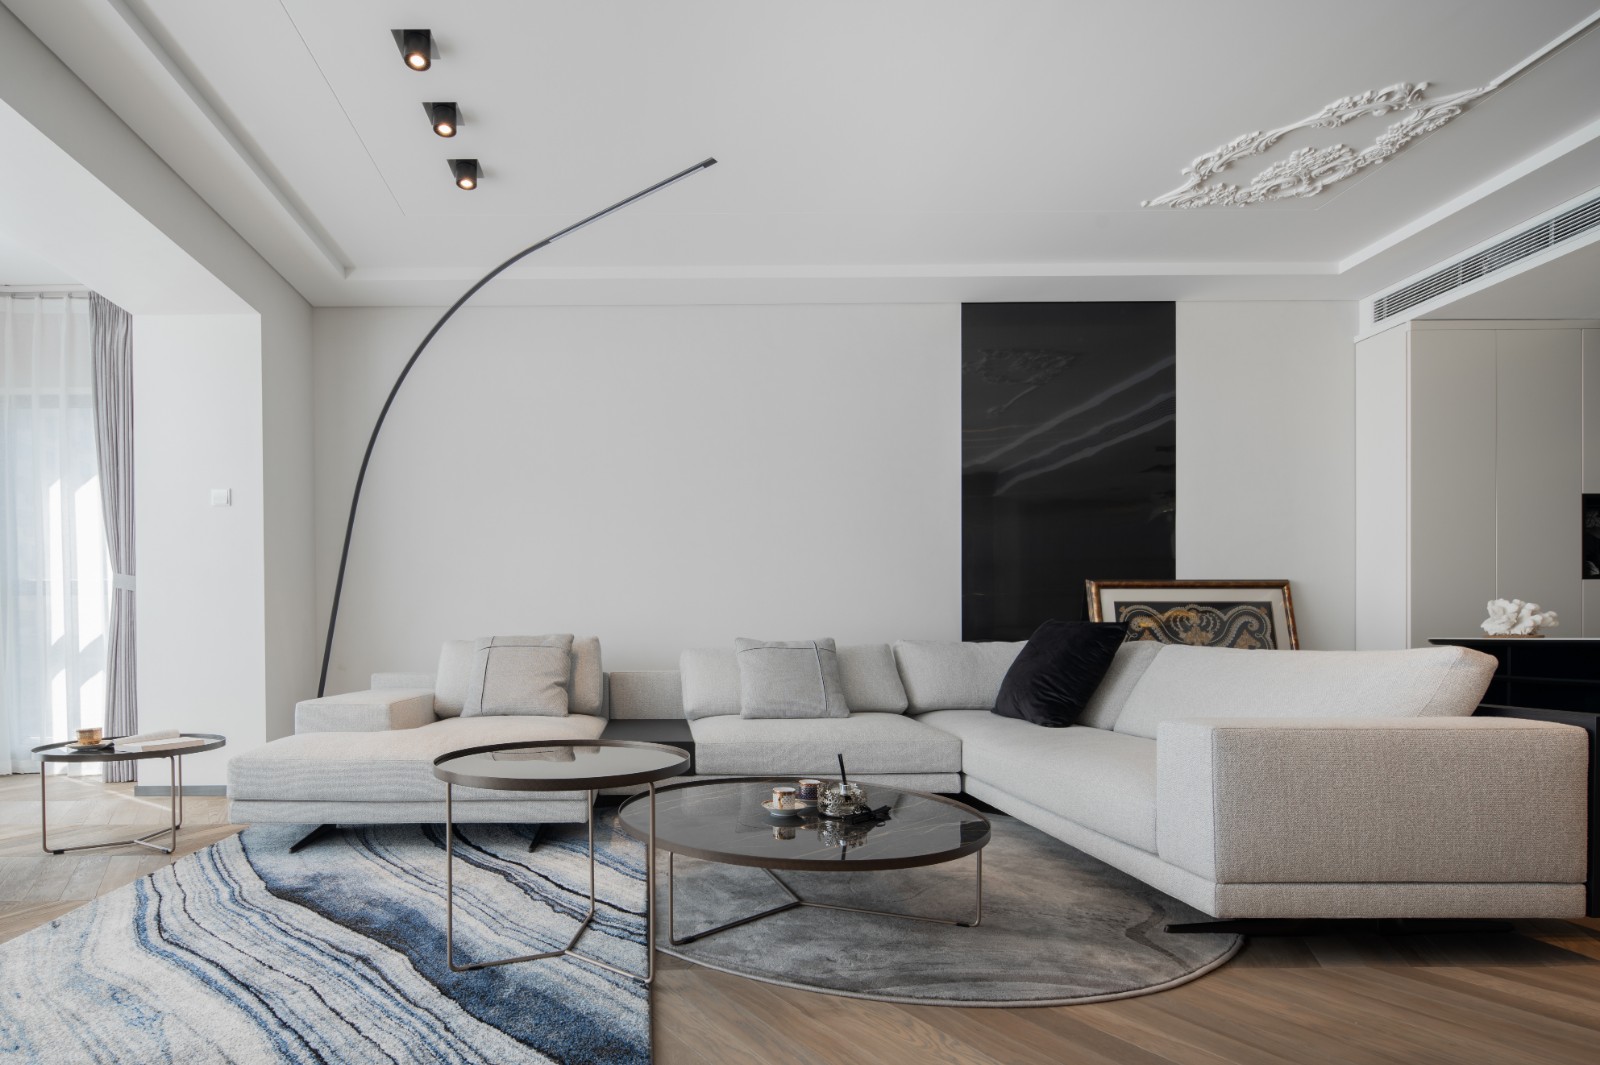 客厅无吊顶设计增加了空间的层次感，搭配米白色布艺沙发，营造出温暖舒适的空间氛围。